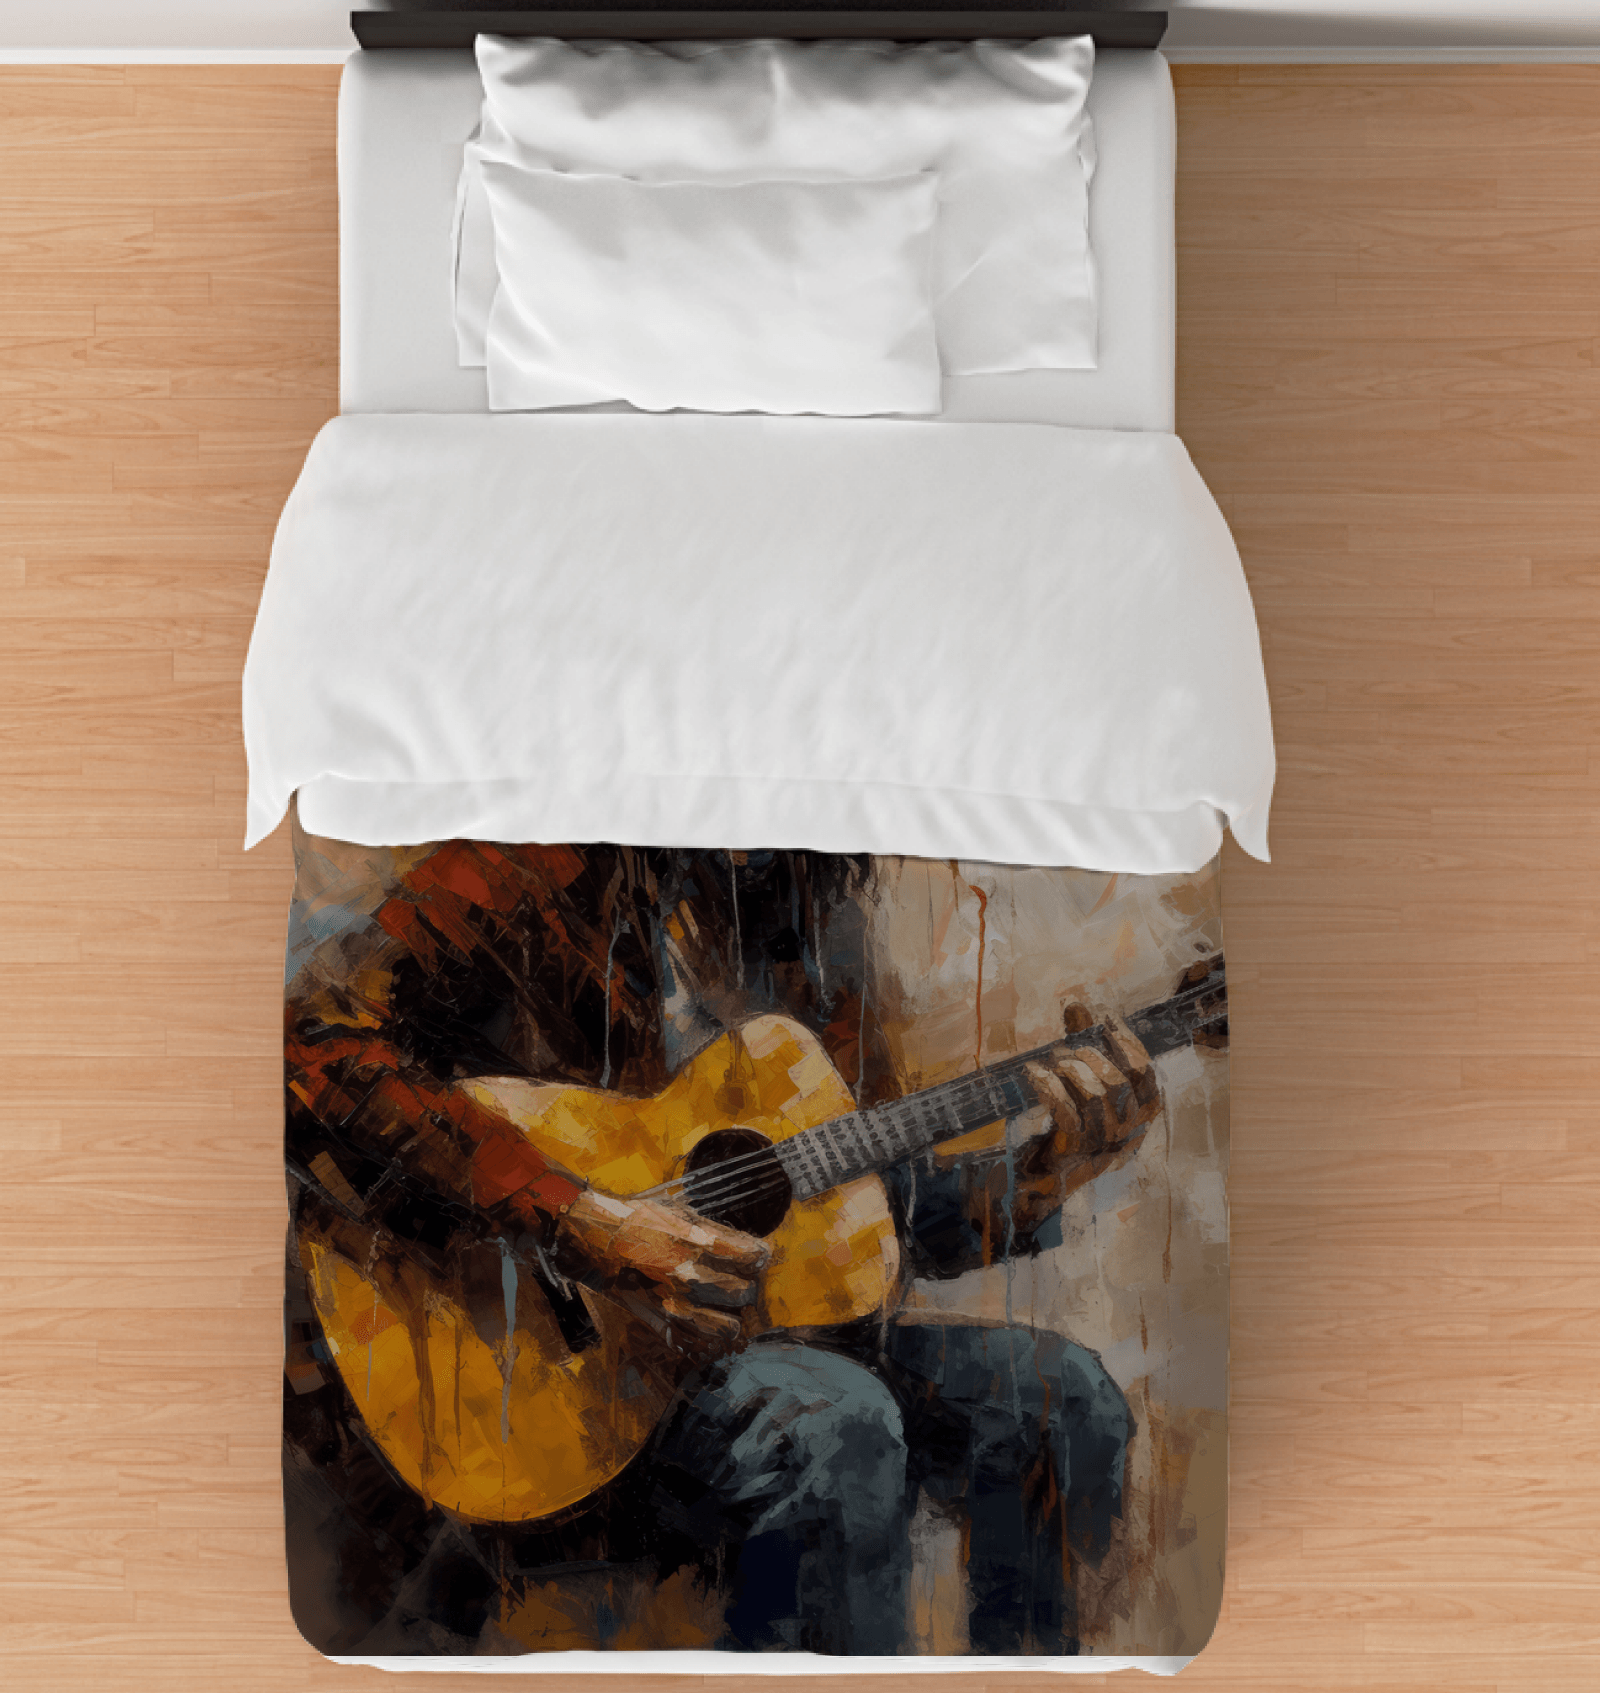 Sonic Serenade Duvet Cover in elegant design for modern bedding.